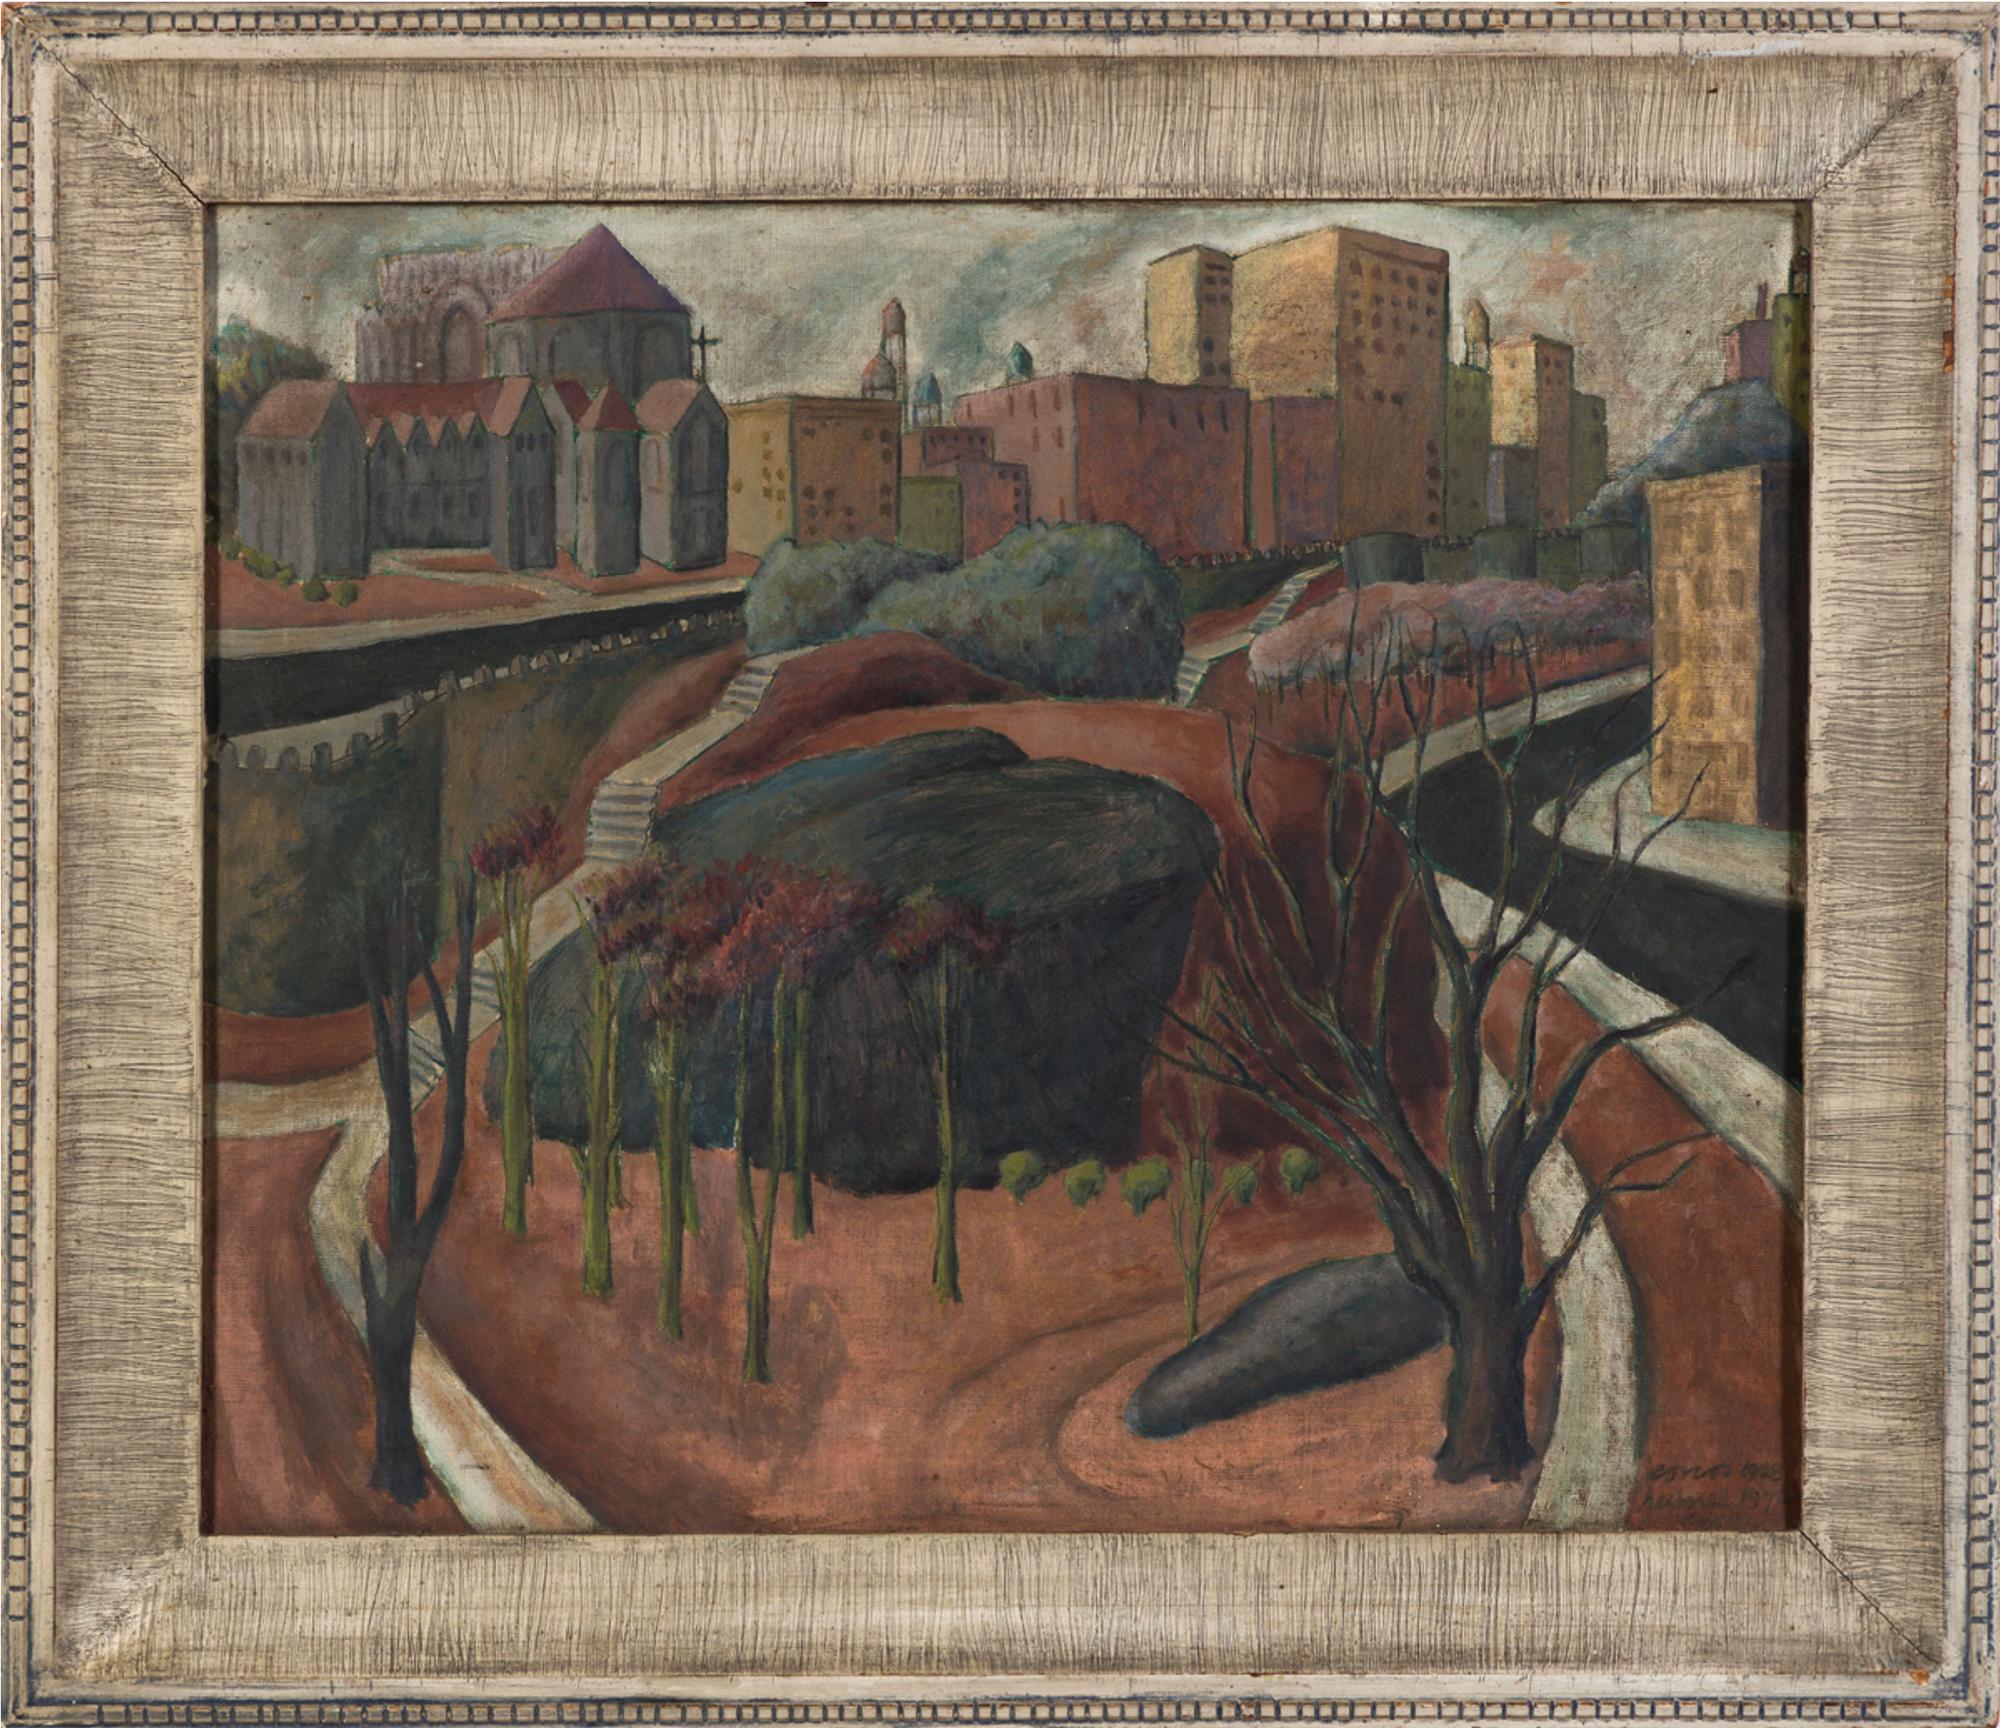 Corcos malt das, was der nördliche Teil des Central Park zu sein scheint, aus einer erhöhten Ansicht in nordwestlicher Richtung. Der Künstler verwendete eine begrenzte Palette von warmen Braun- und Grautönen mit kräftigen Umrisslinien. Sie war eine